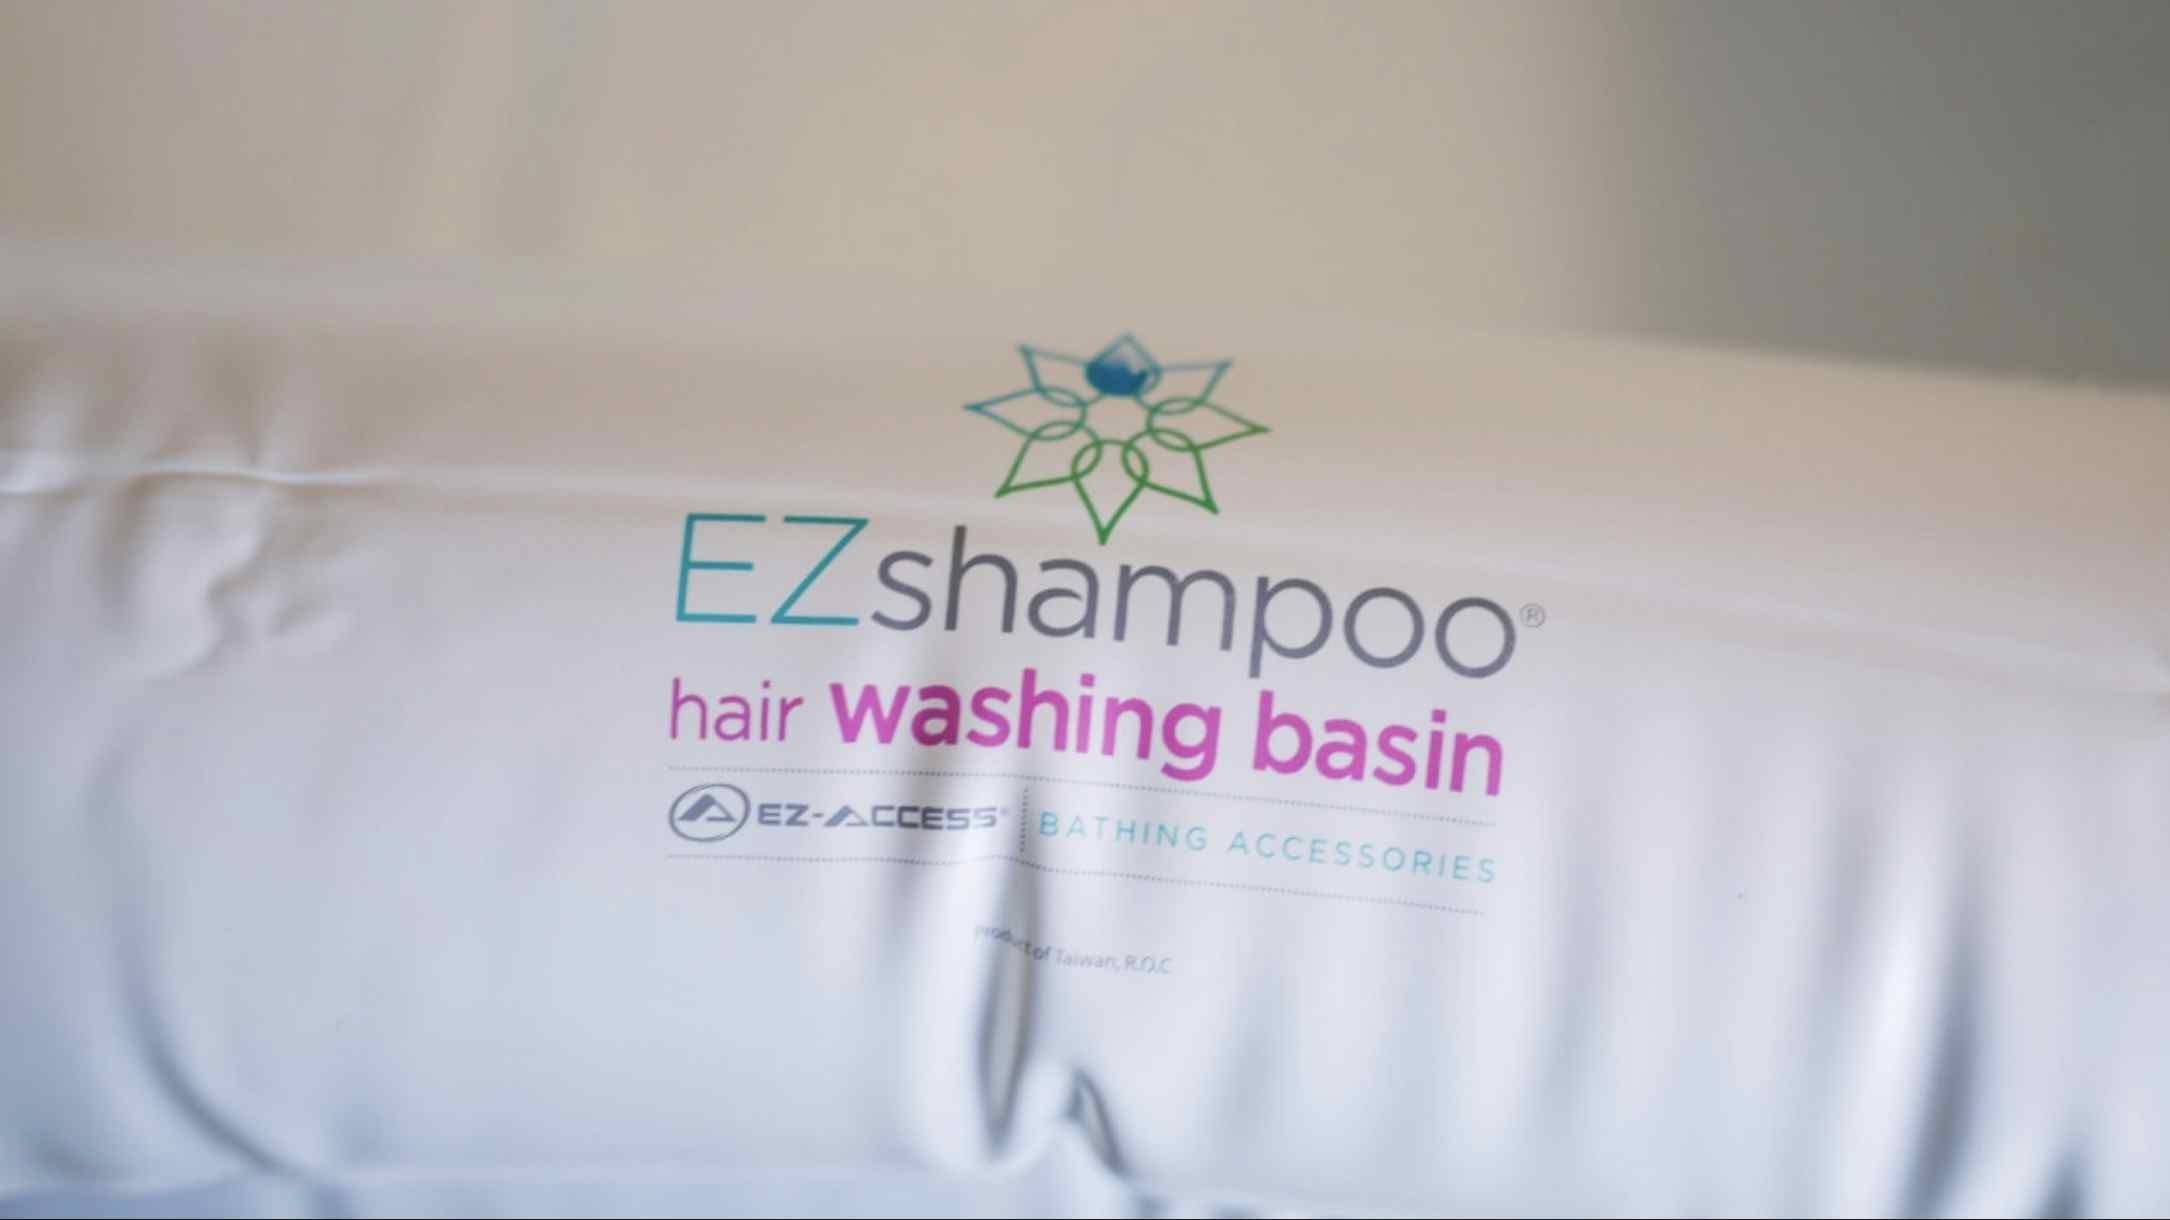 EZ-Access EZ-Shampoo Inflatable Shampoo Basin, outside